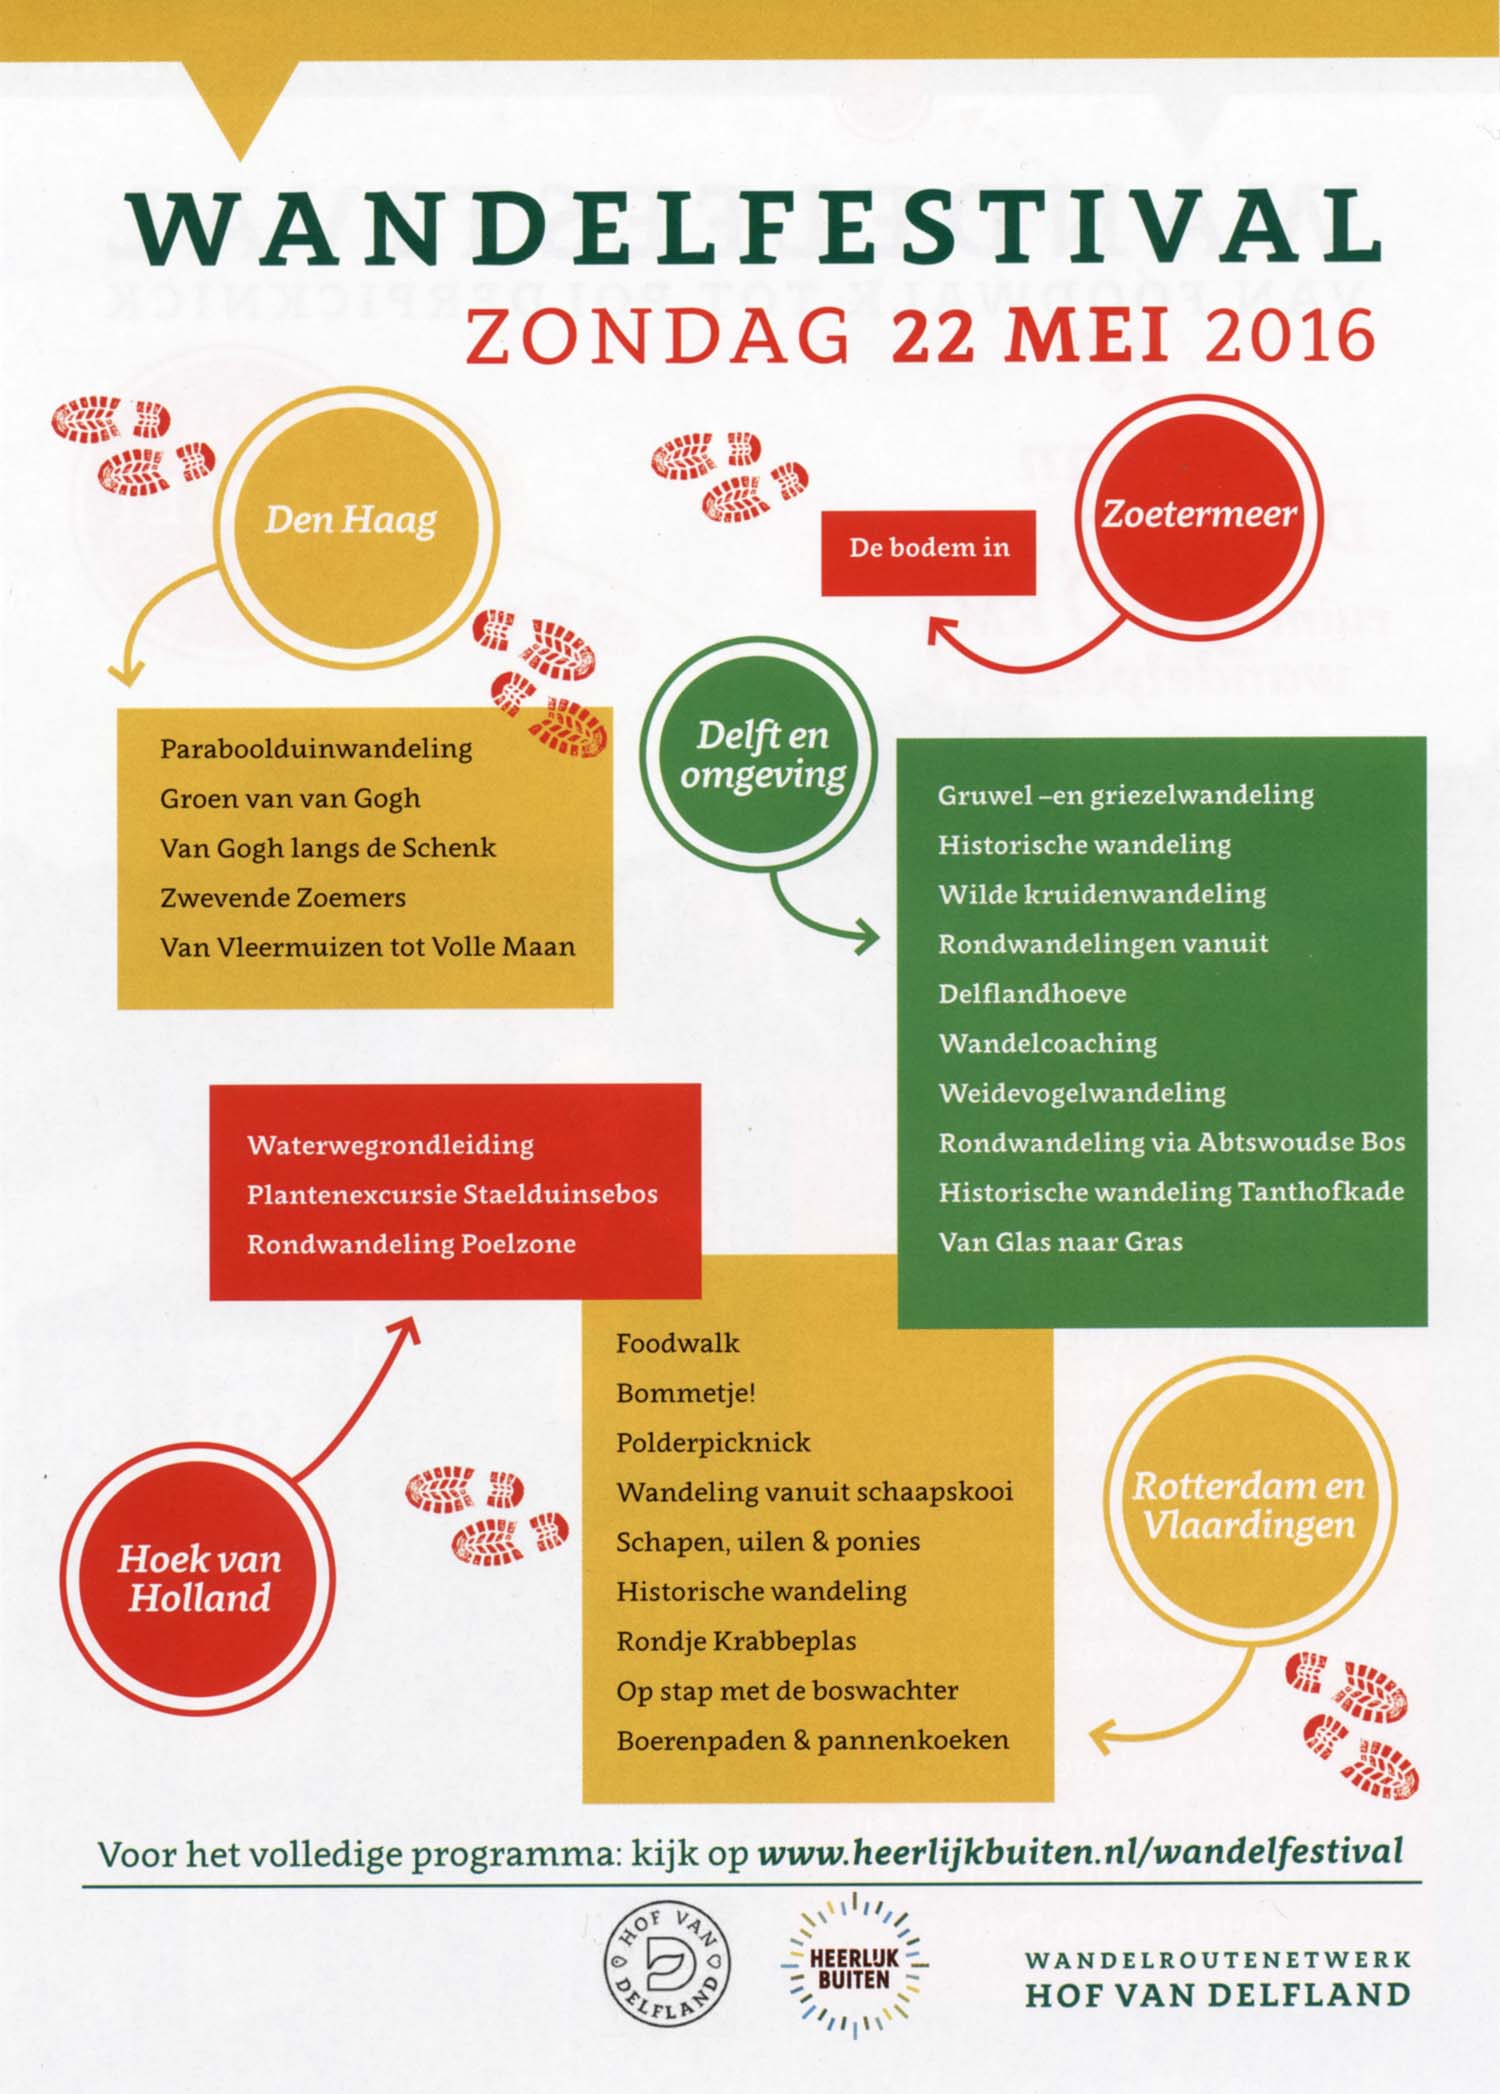 Wandelfestival Hof van Delfland - zondag 22 mei 2016